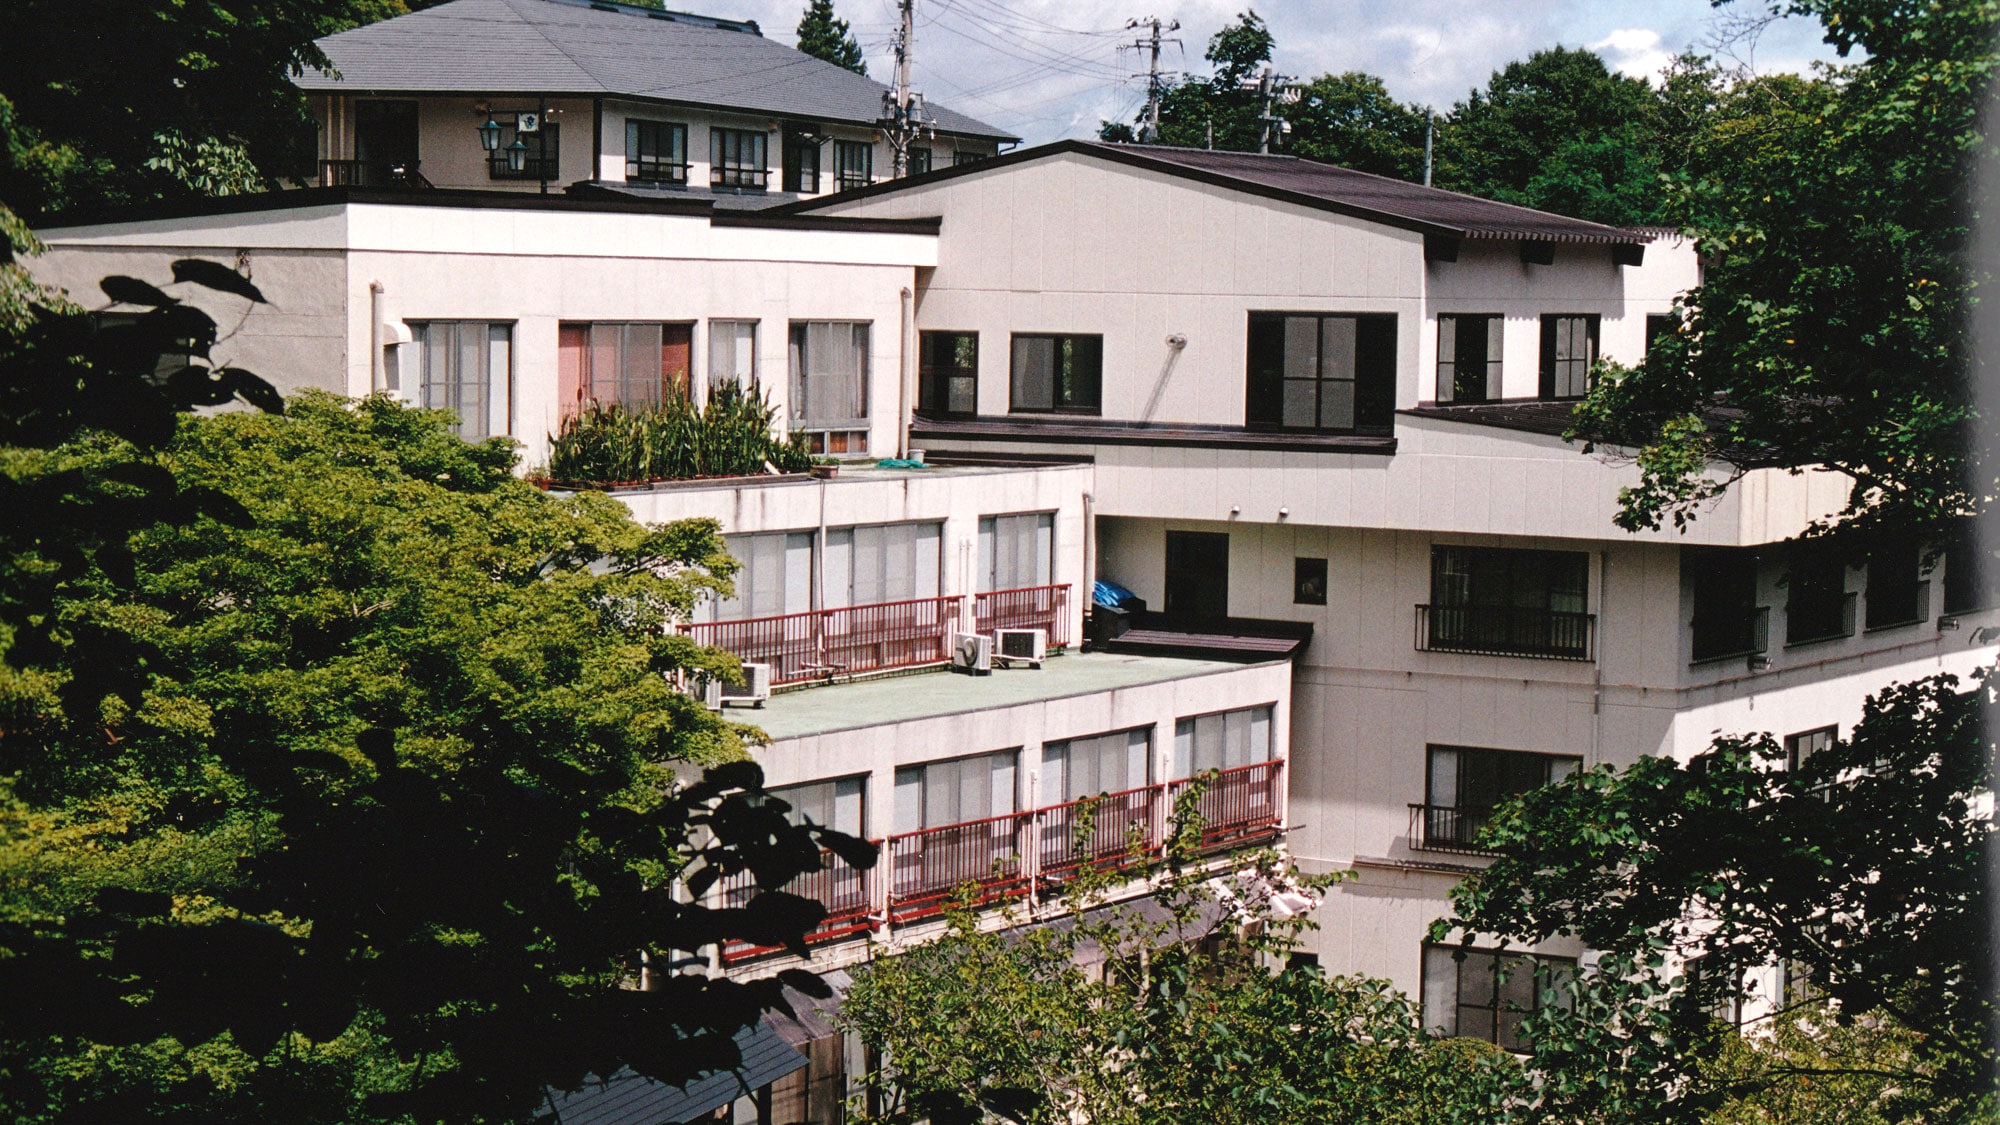 【外观】“柏屋旅馆”是沿着二木川河谷建造的温泉旅馆。